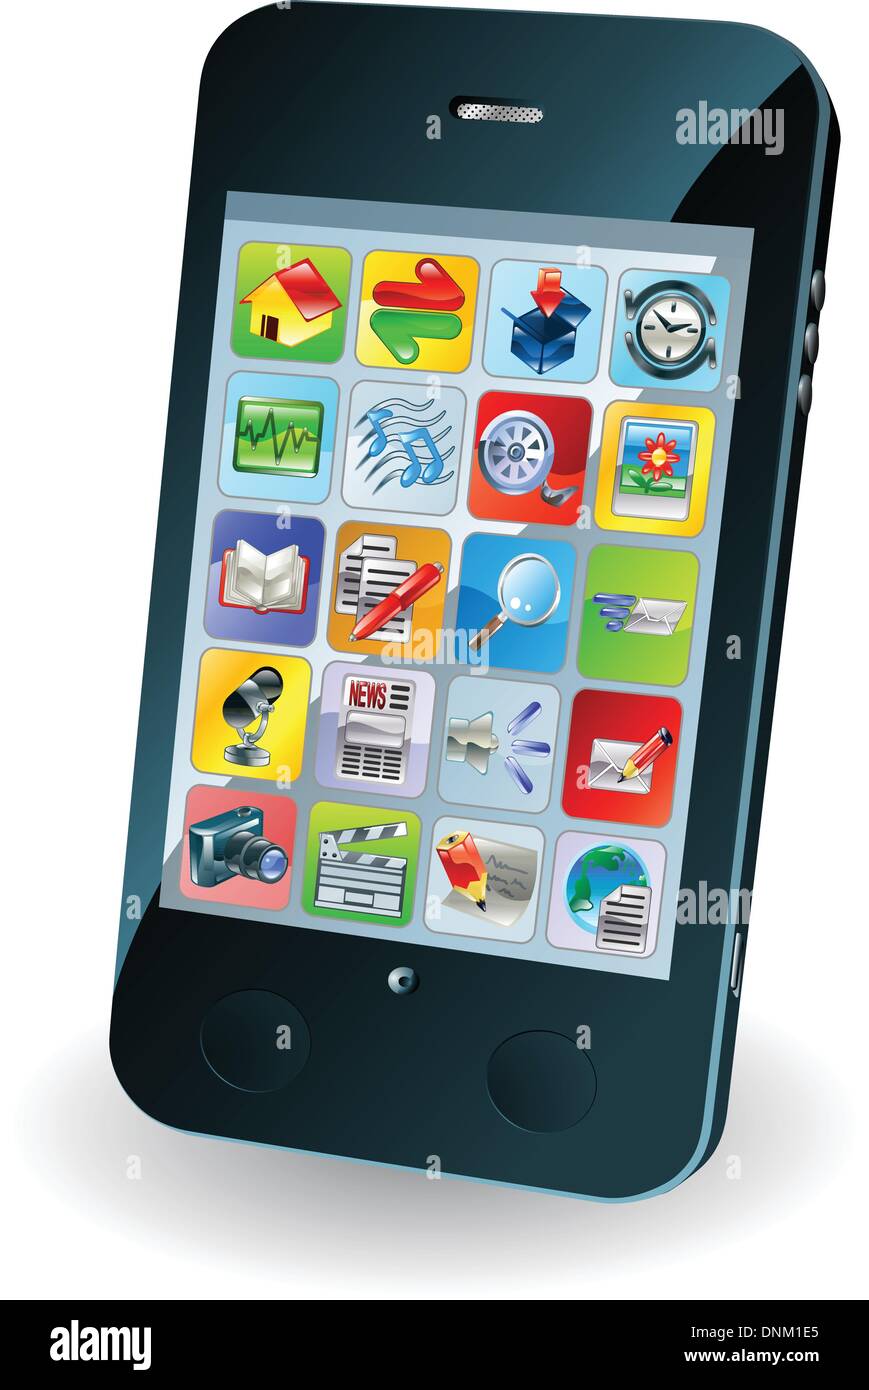 Illustrazione di una nuova smart telefono cellulare Illustrazione Vettoriale